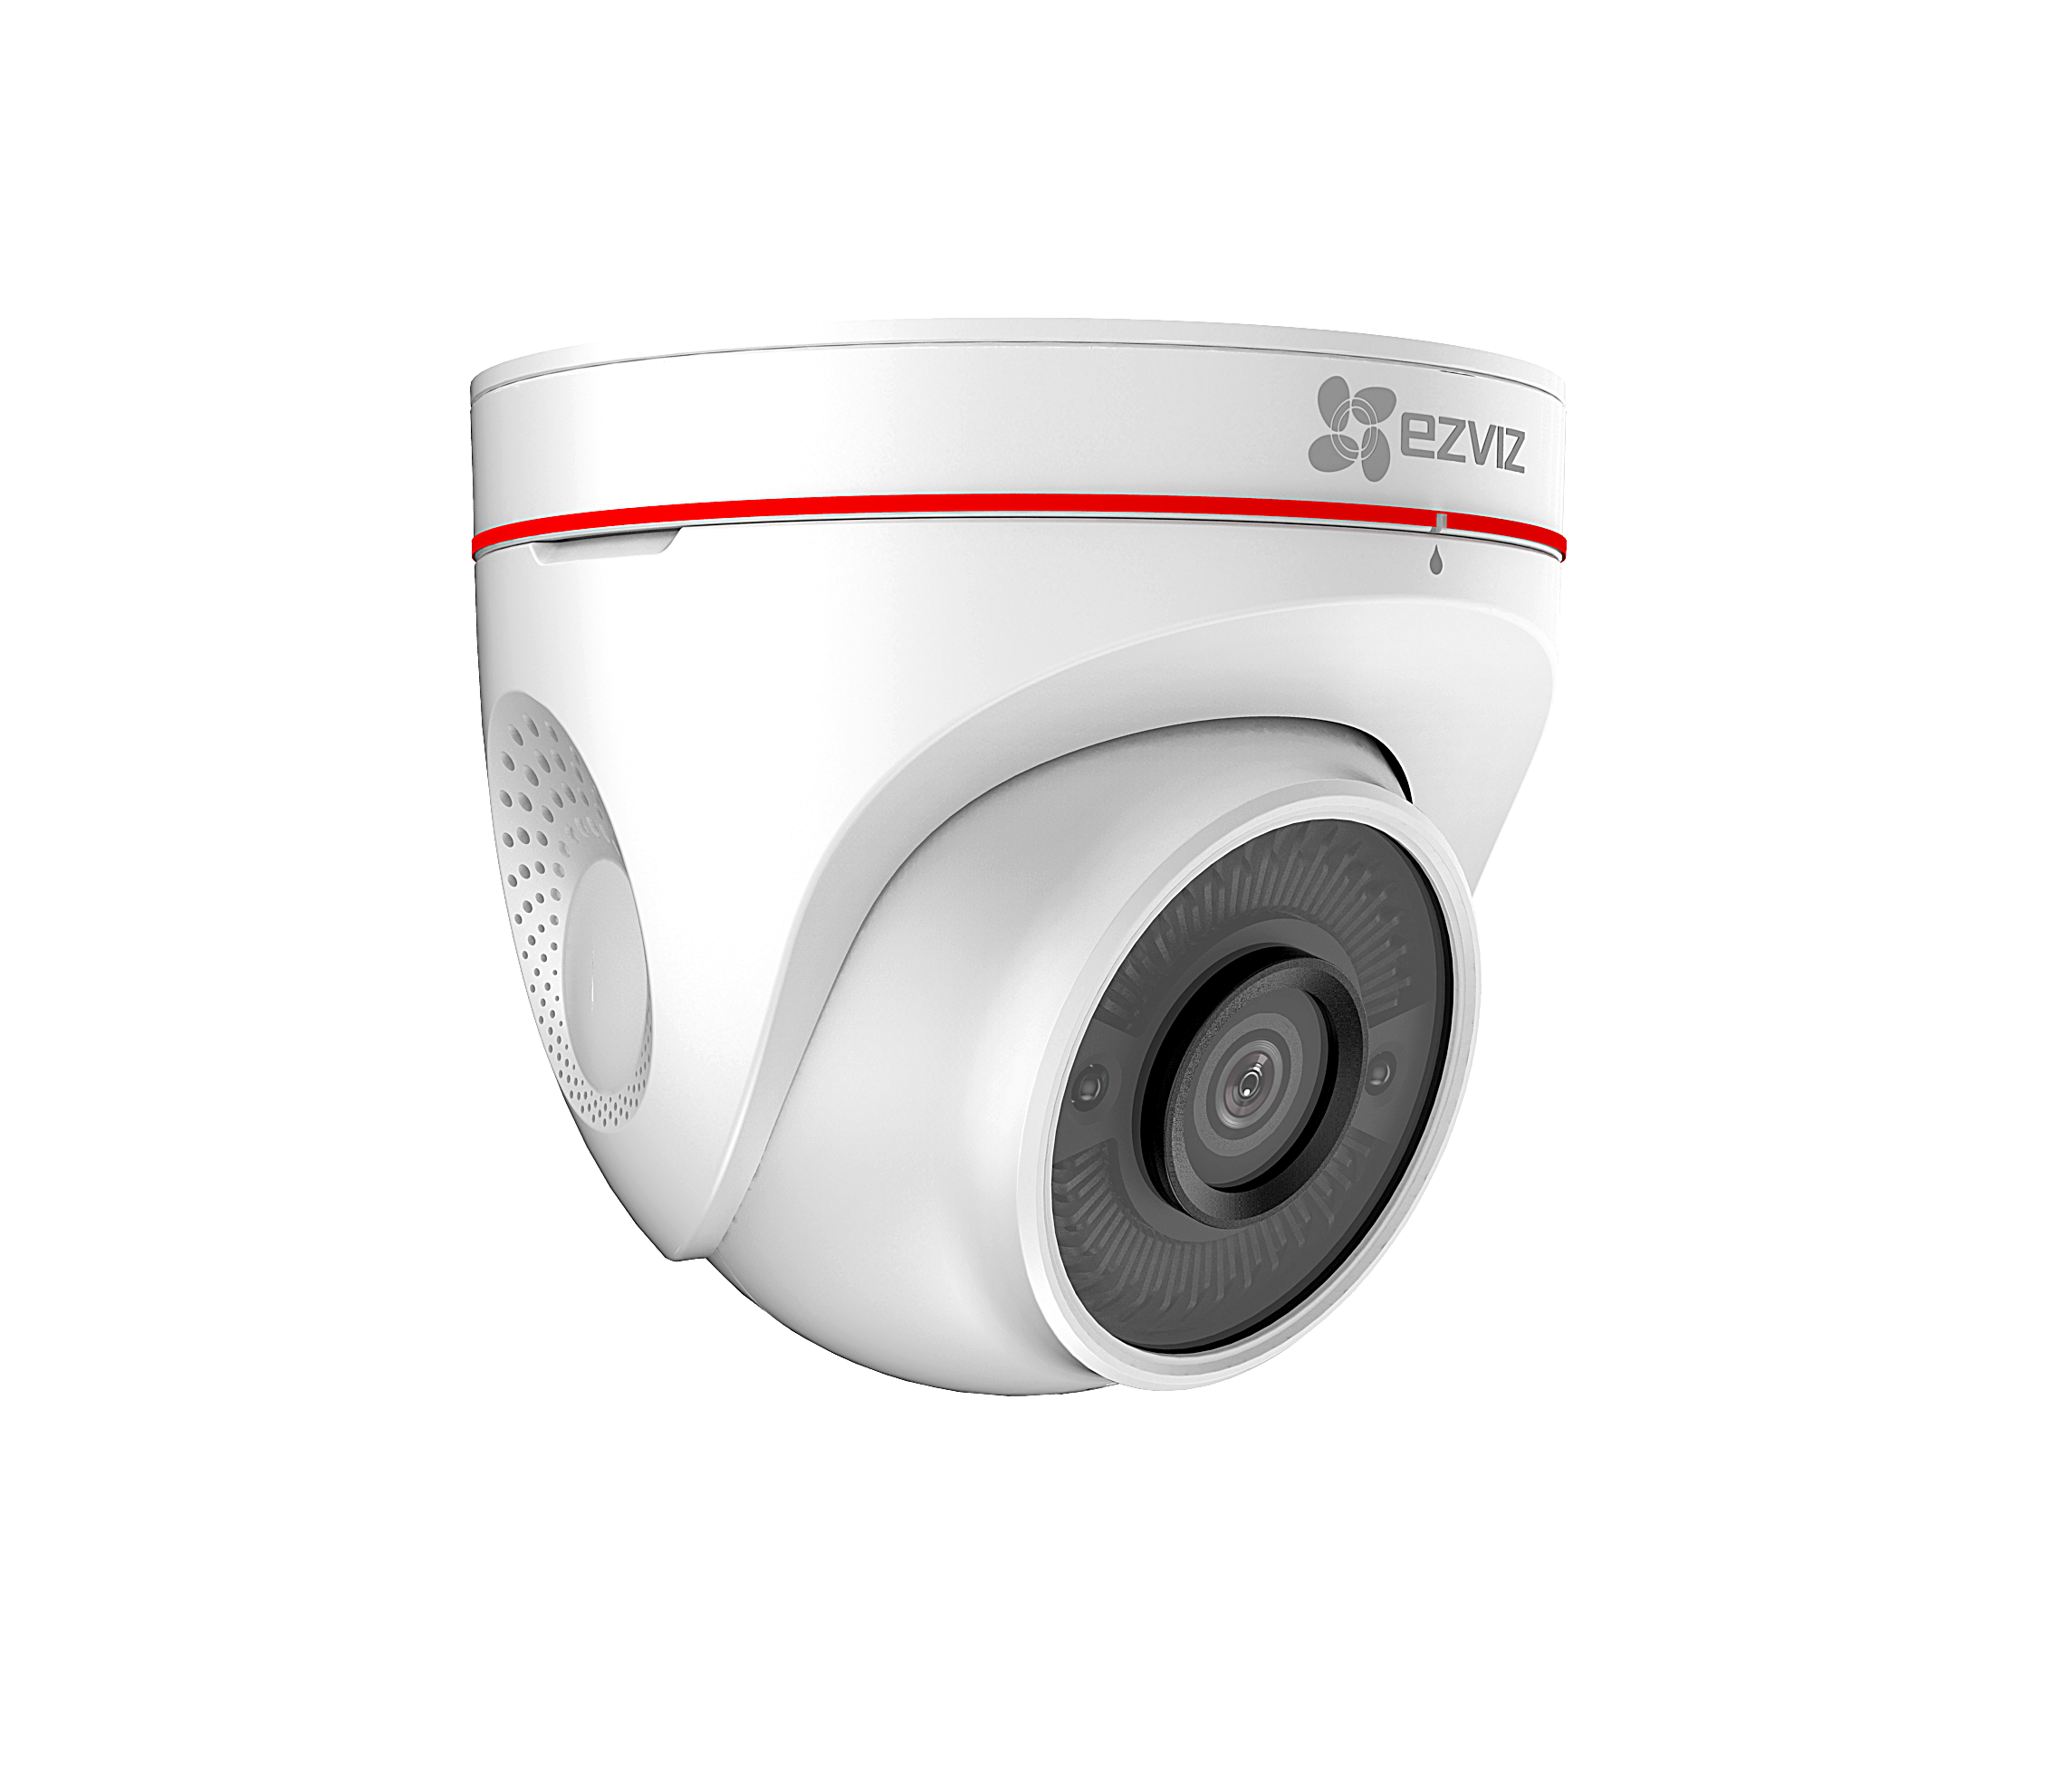 Camera EZVIZ C4W CS-CV228 2.0 Megapixel, âm thanh 2 chiều, đèn và còi báo động, hồng ngoại 30m